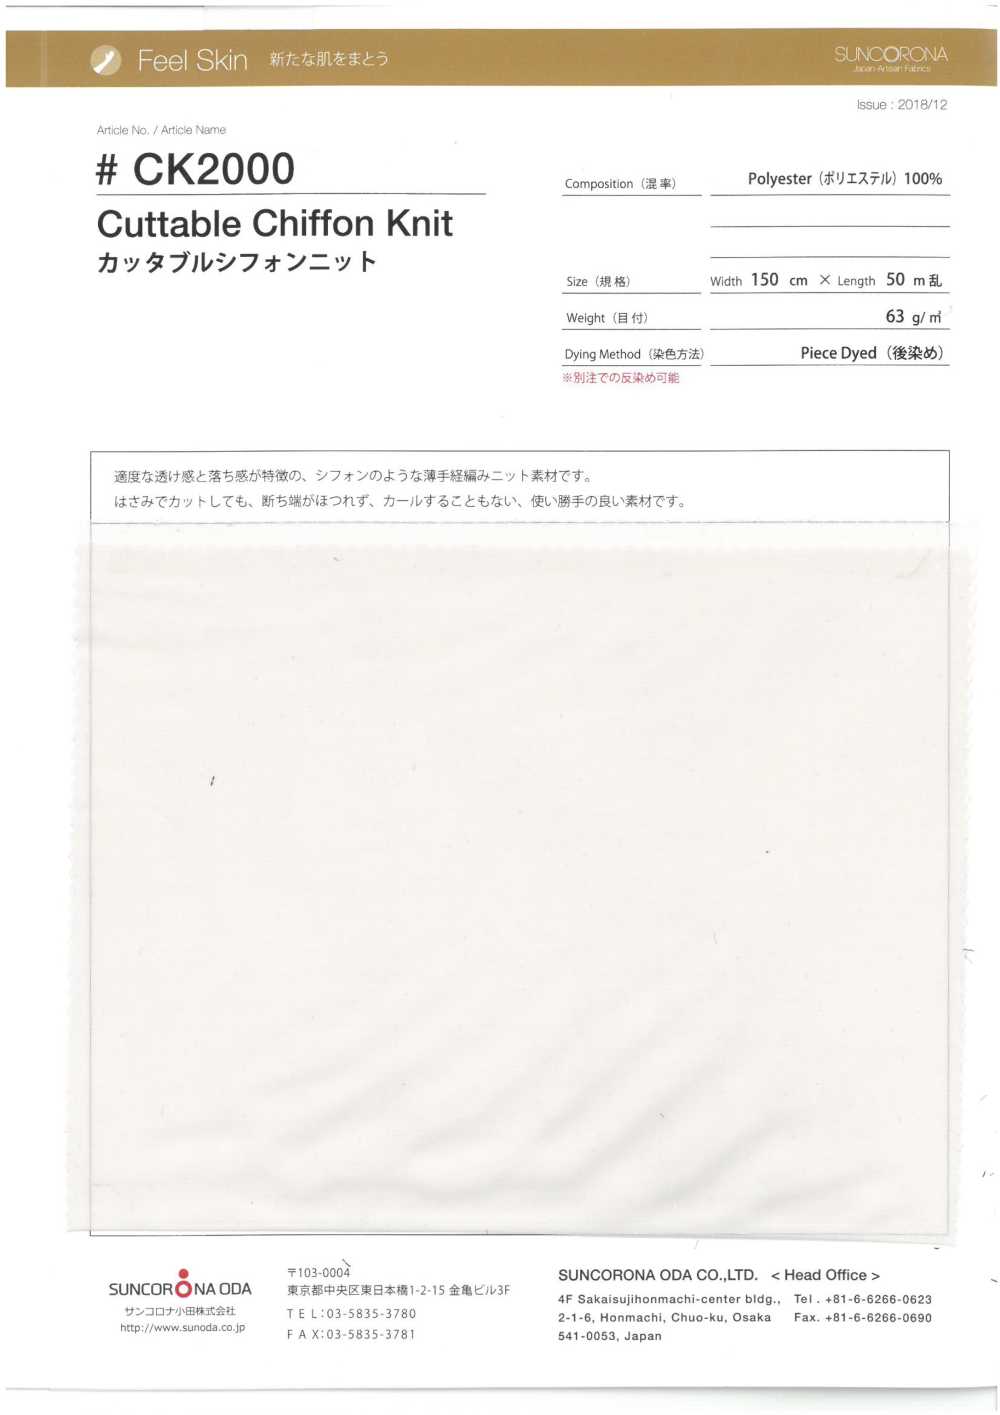 CK2000 Cuttable Chiffon Knit[Textile / Fabric] Suncorona Oda